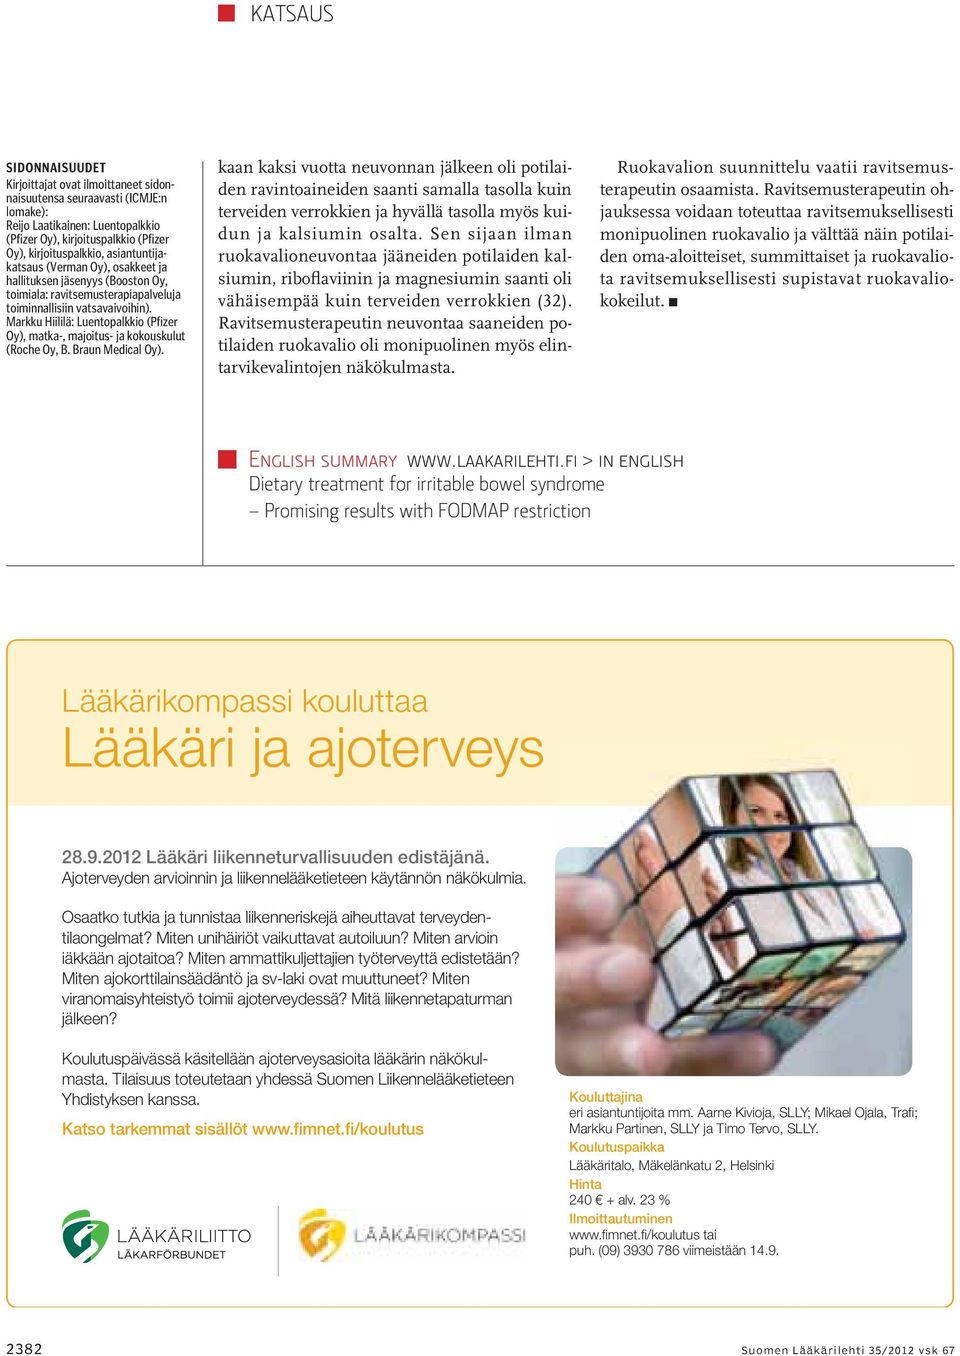 Markku Hiililä: Luentopalkkio (Pfizer Oy), matka-, majoitus- ja kokouskulut (Roche Oy, B. Braun Medical Oy).